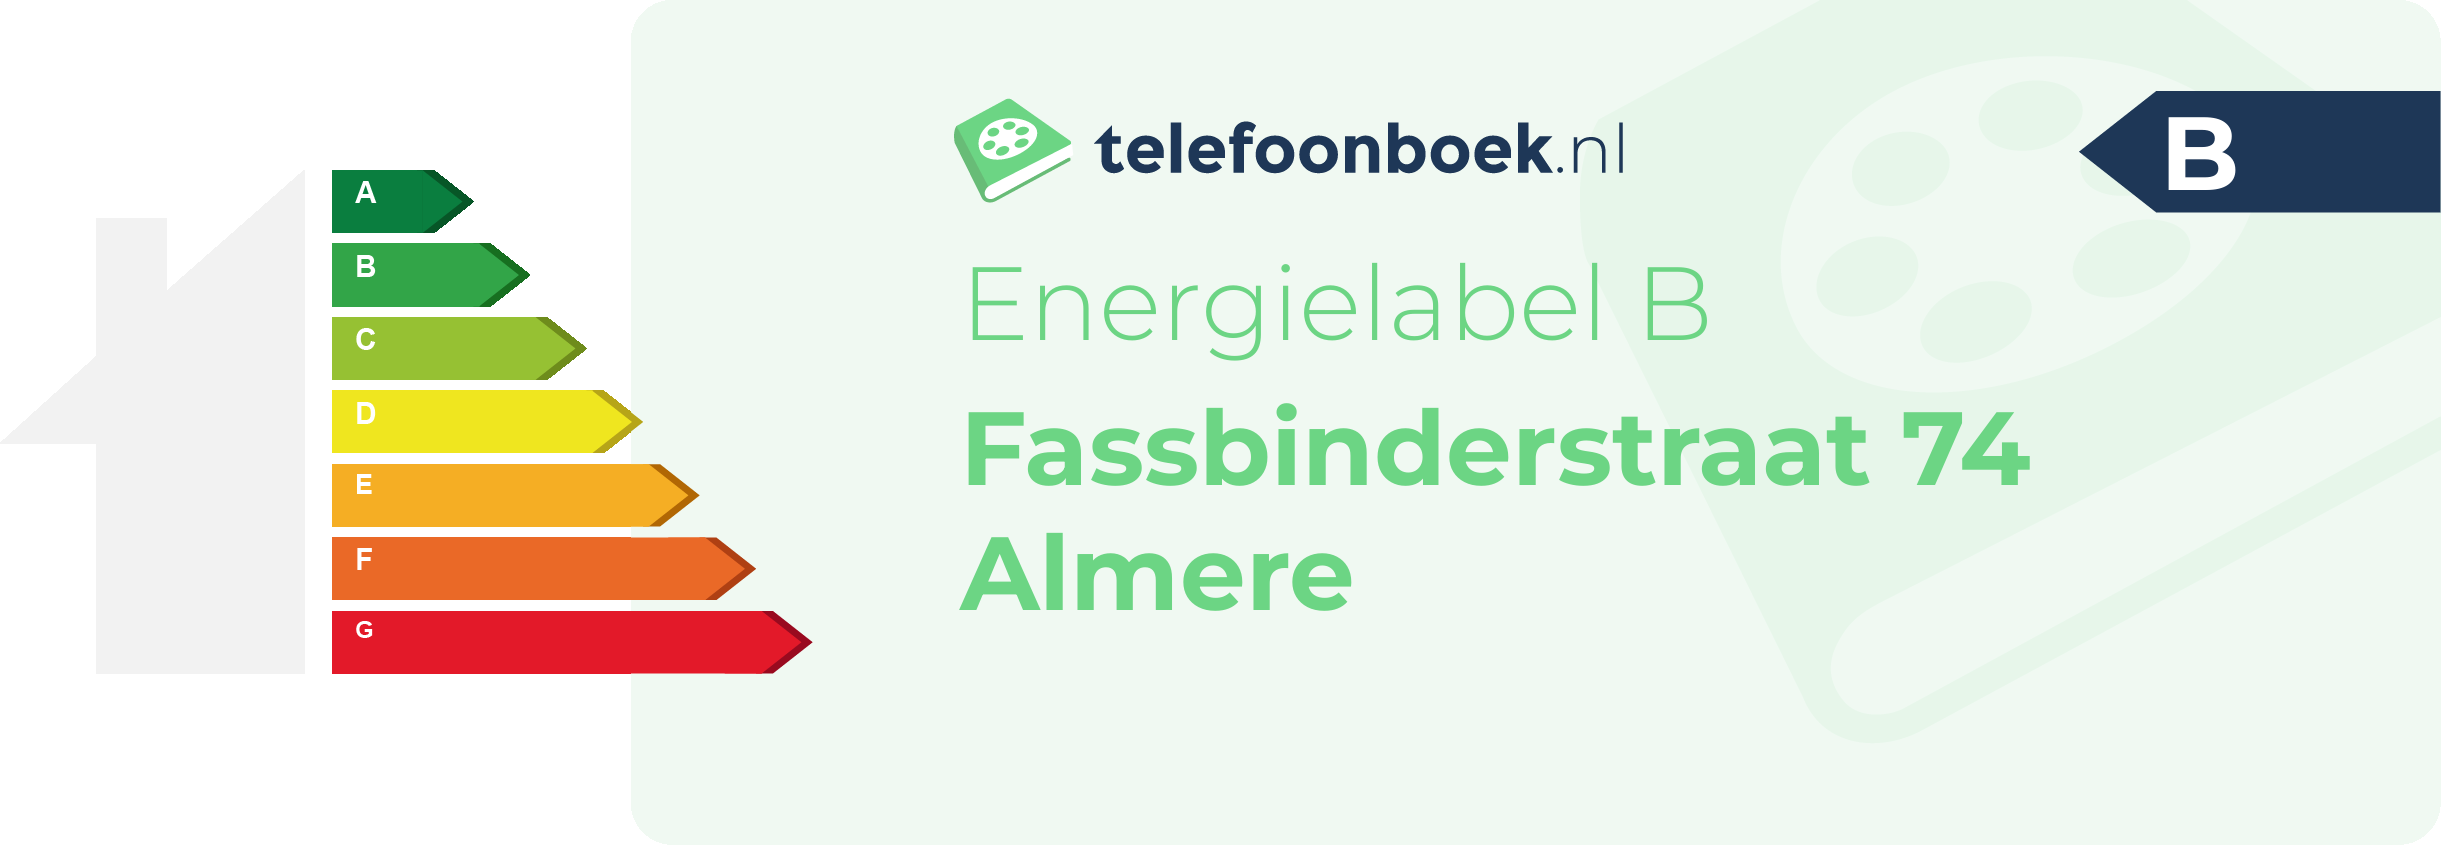 Energielabel Fassbinderstraat 74 Almere